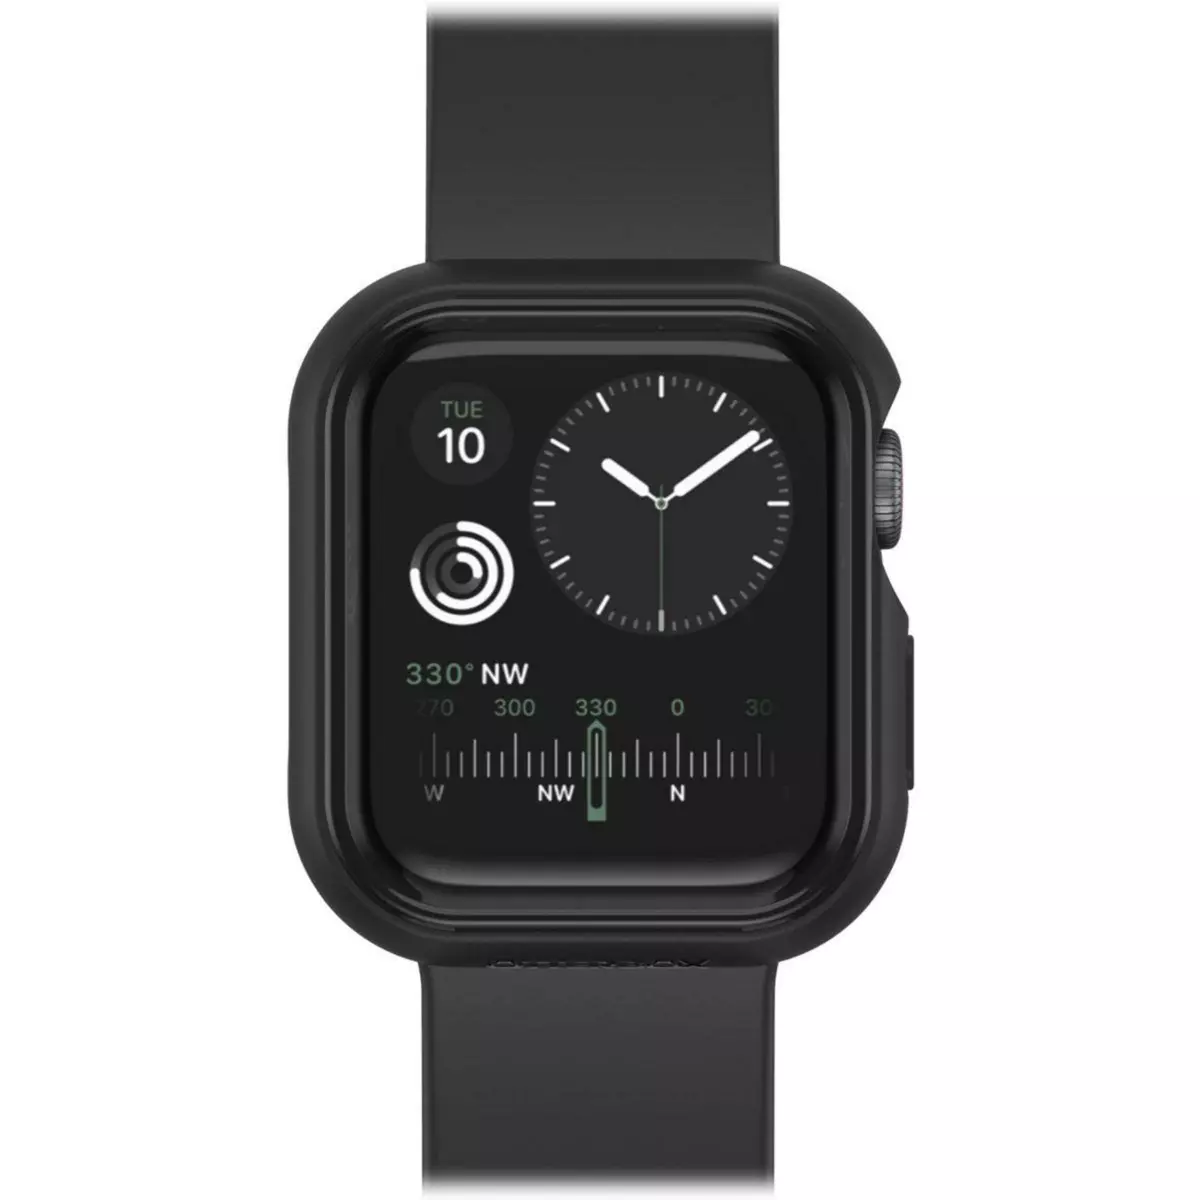 Otterbox Coque Apple Watch 4/5/6/SE2 40mm noir